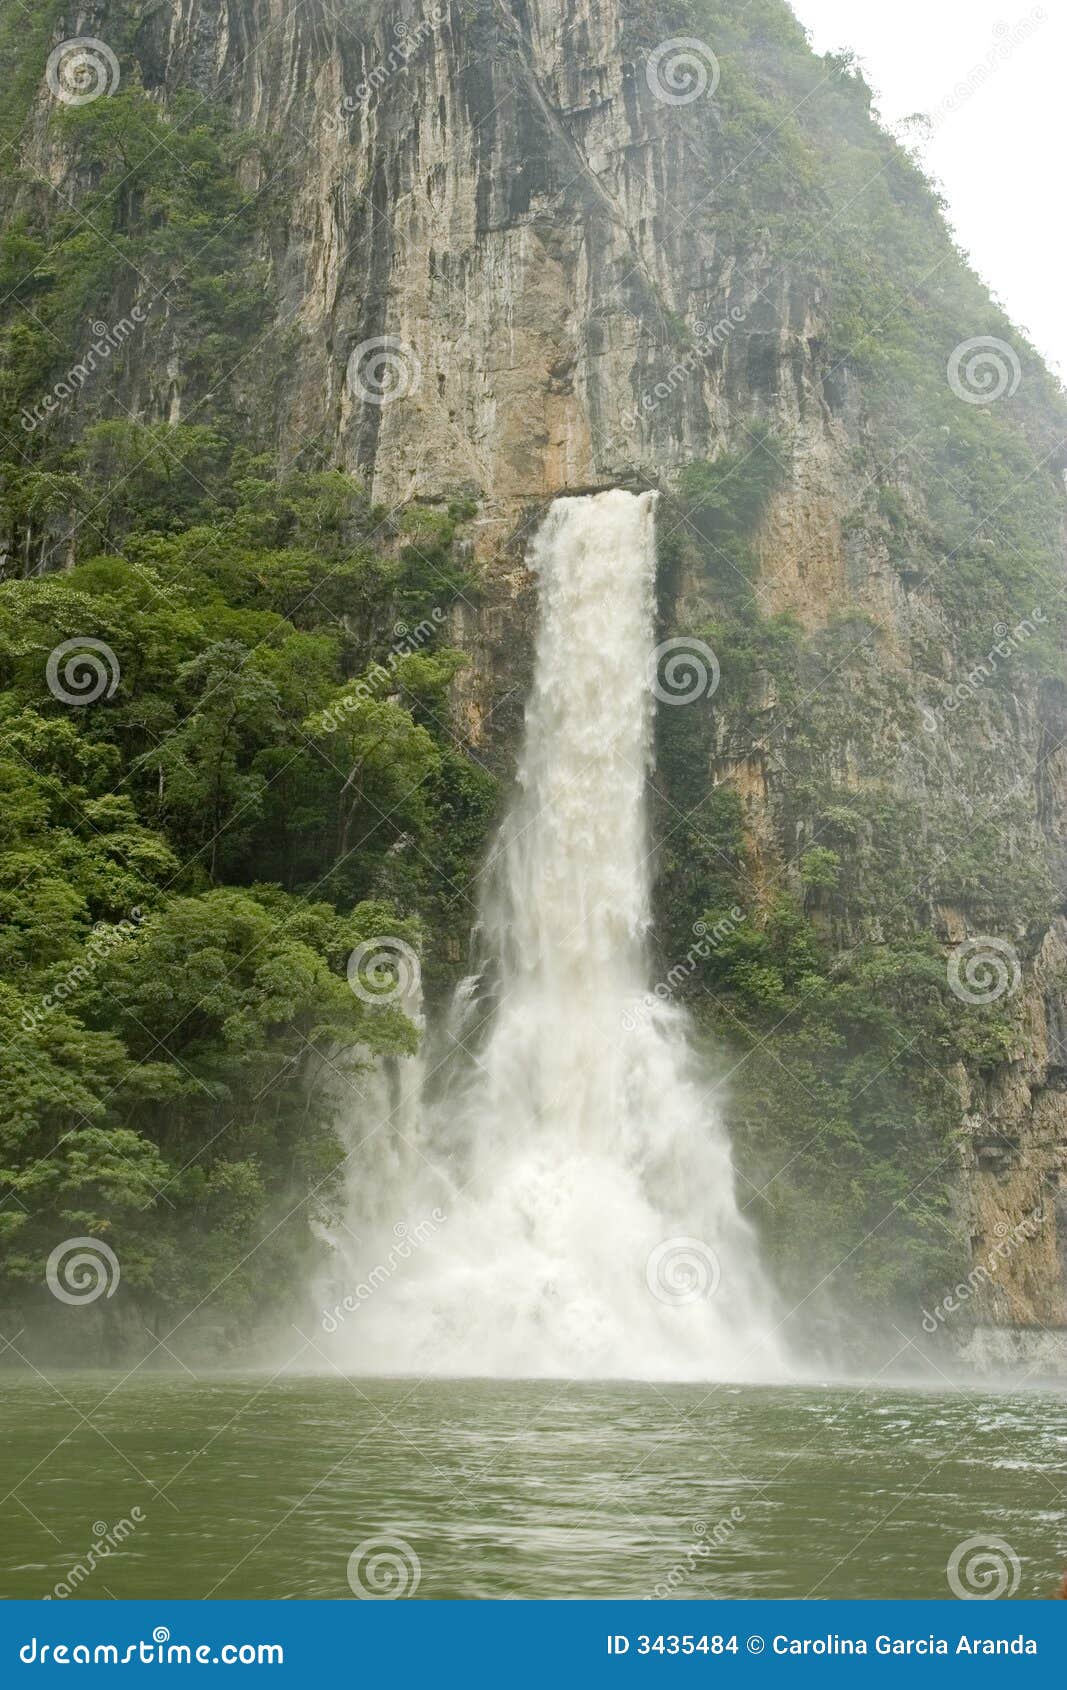 waterfall in sumidero canyon